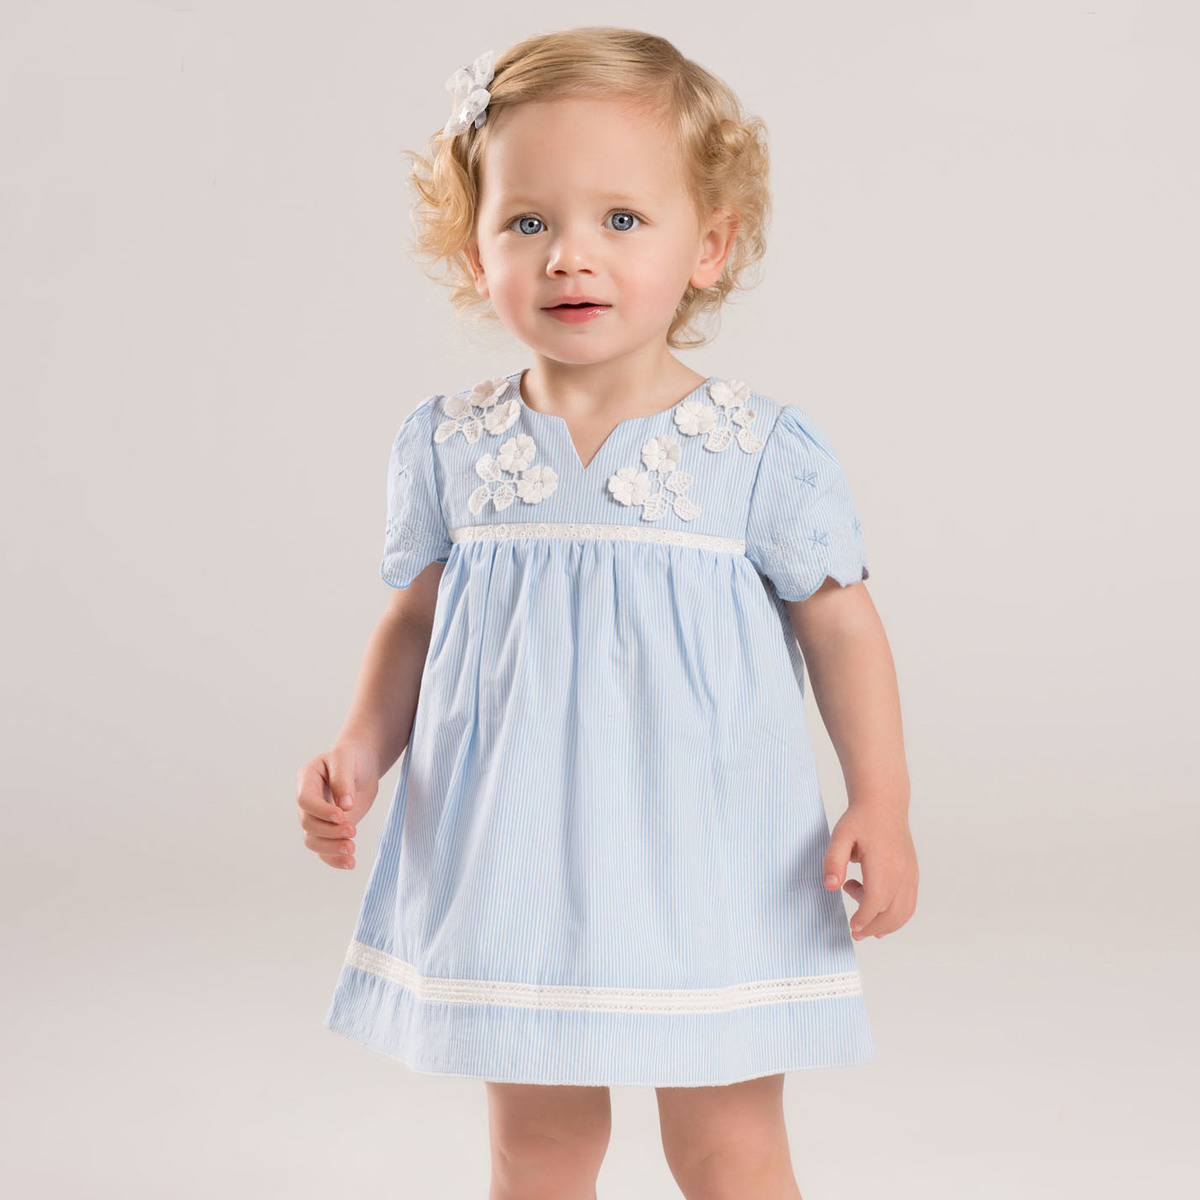 女童连衣裙定制加工 童装蓝白条纹裙子